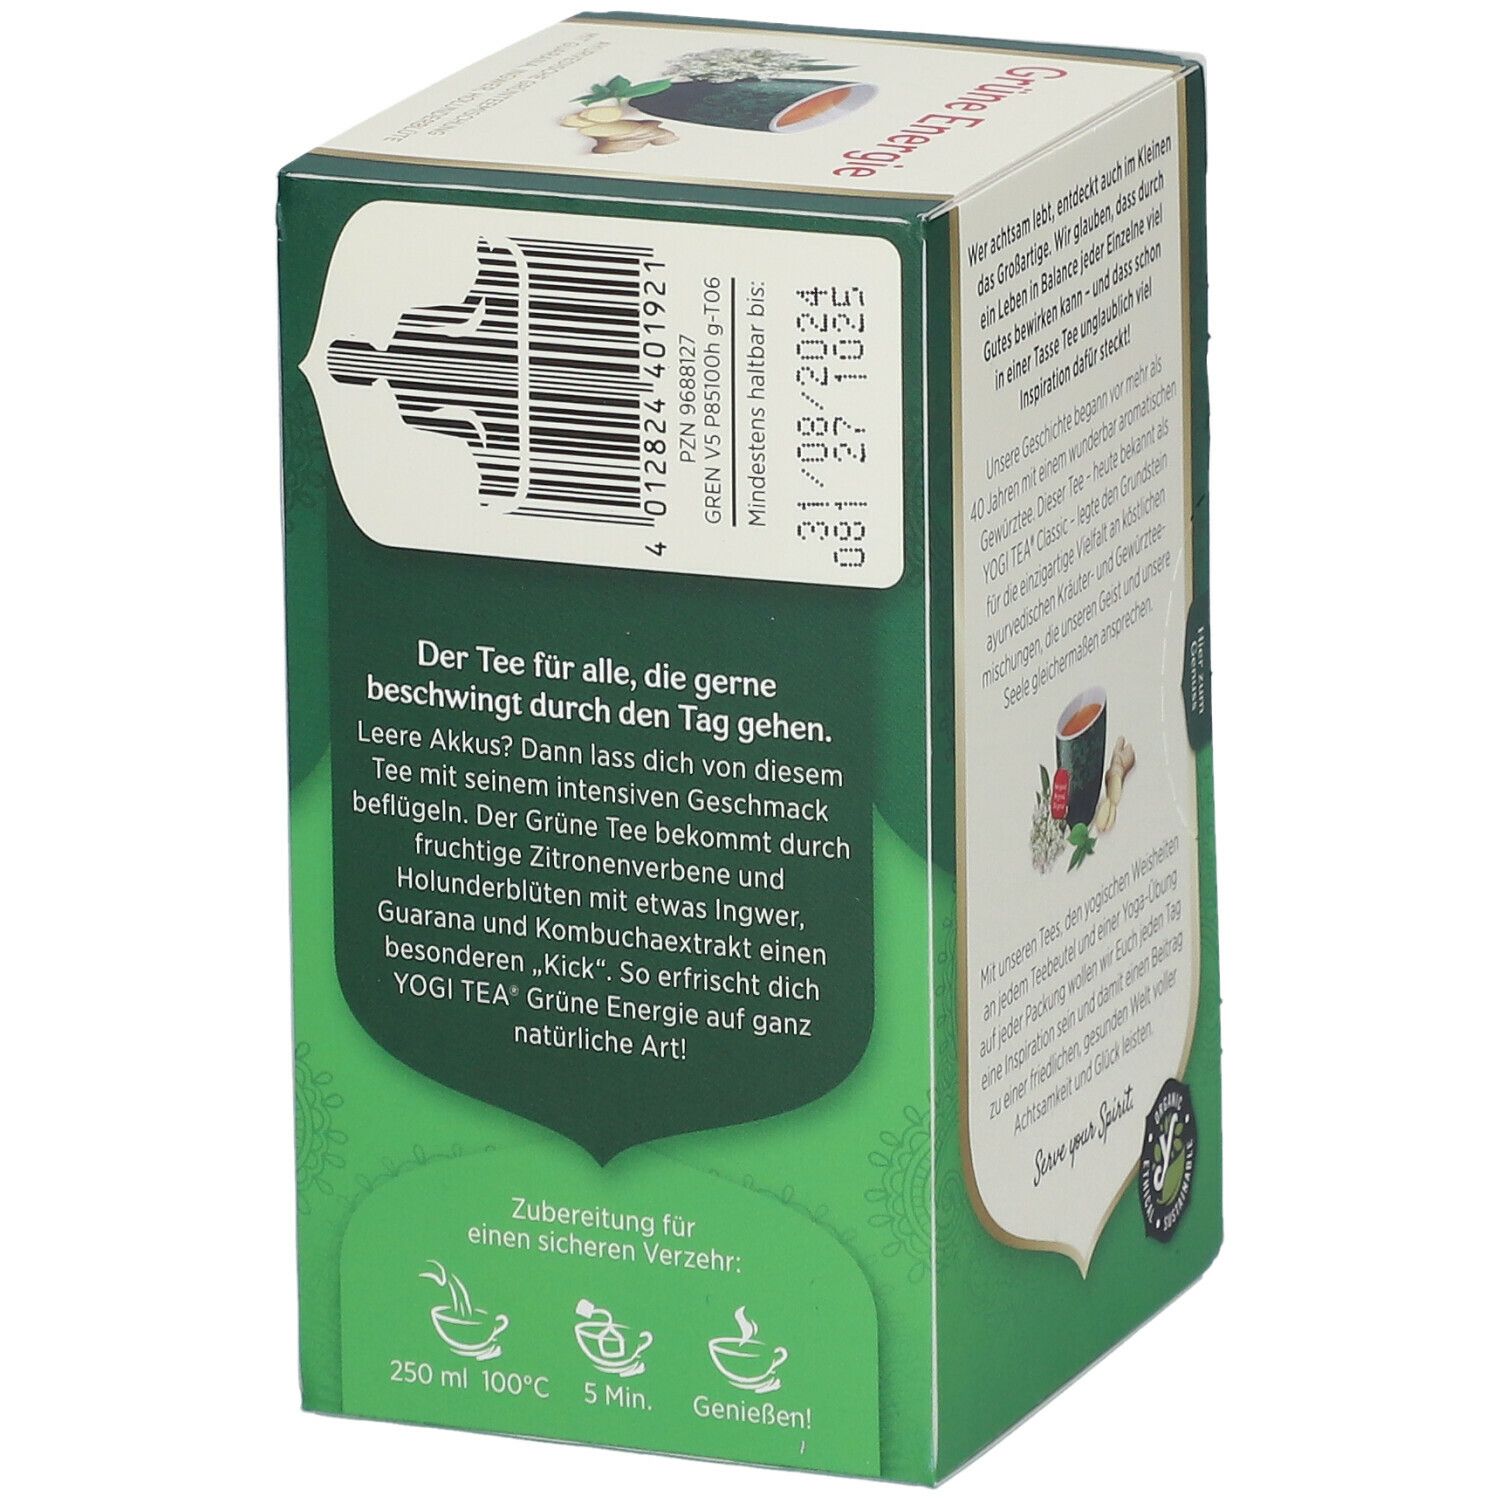 YOGI TEA® Grüne Energie, Grüner Bio Kräutertee